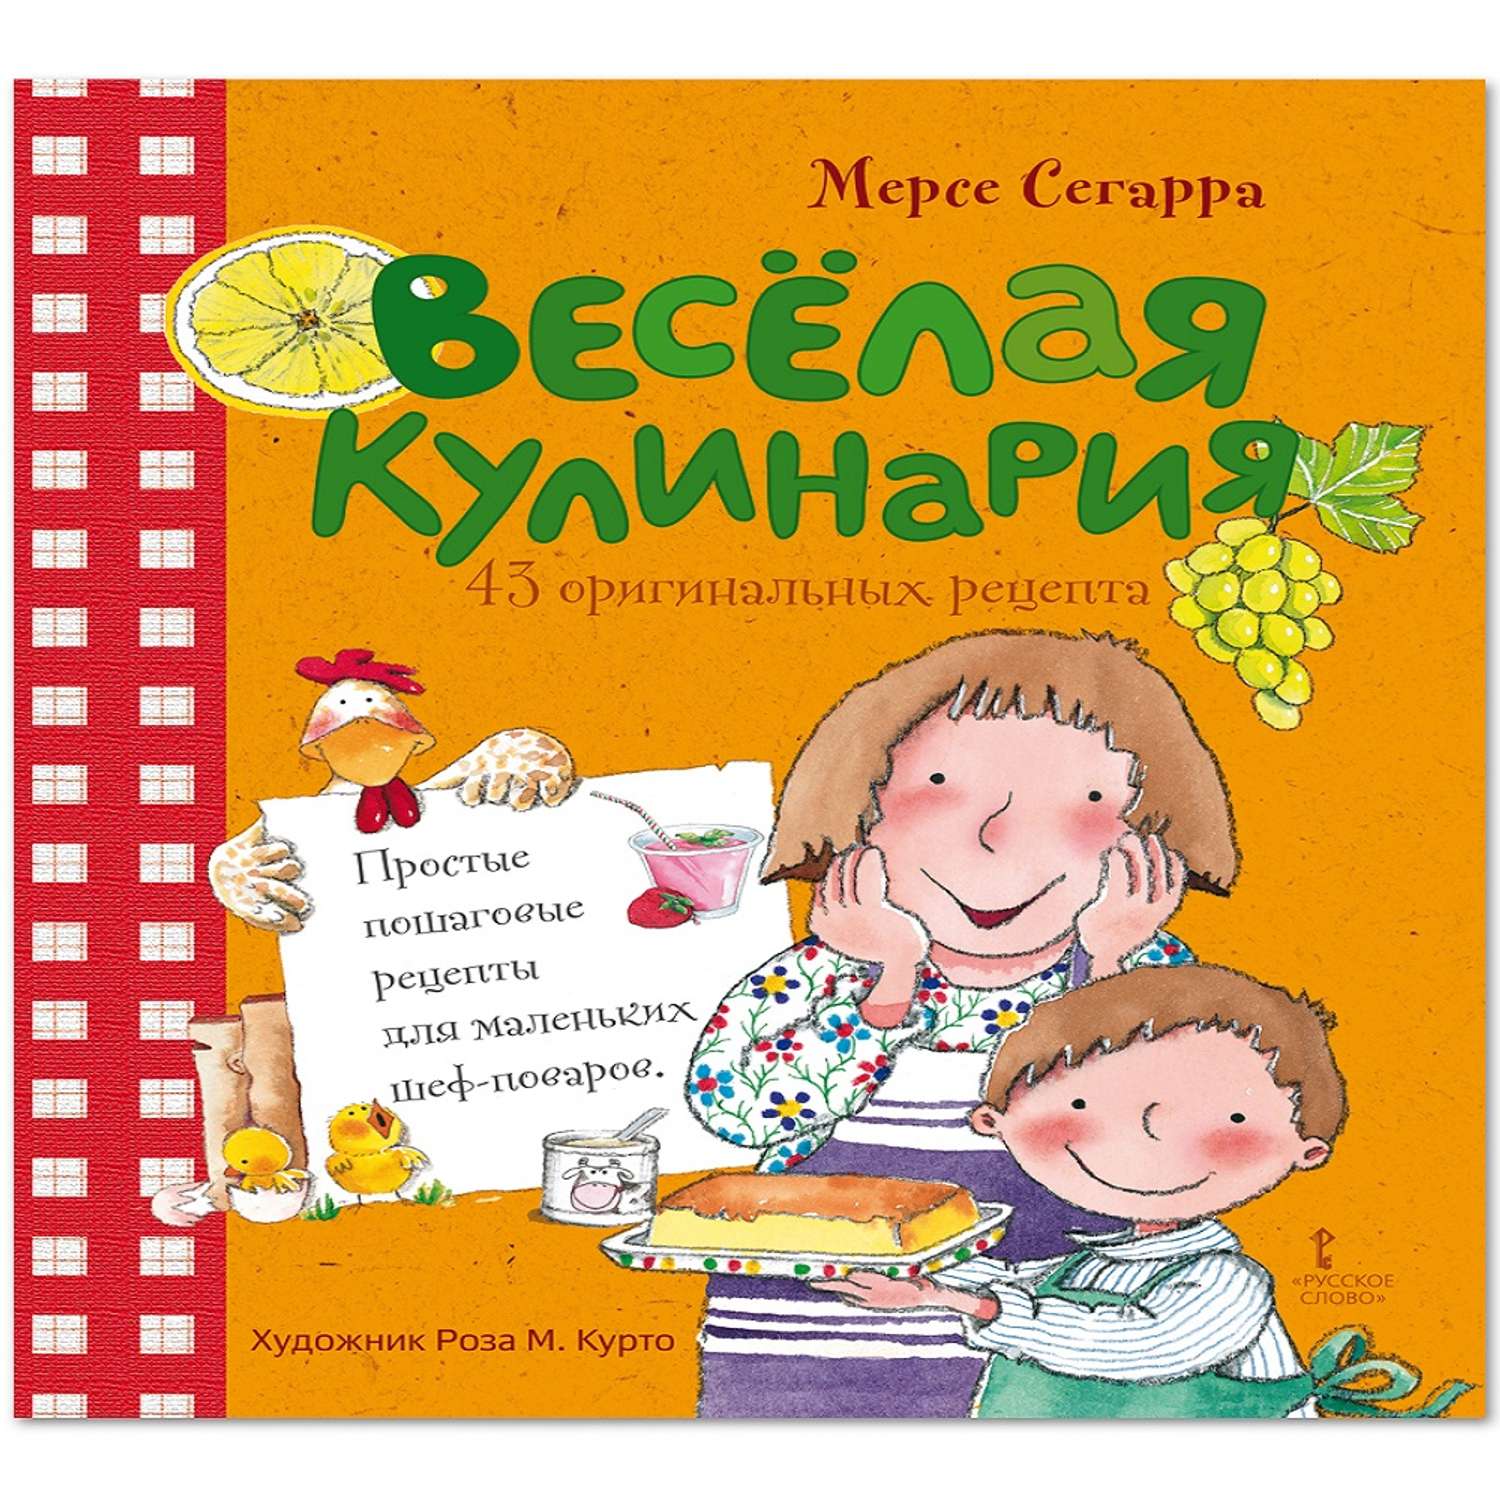 Книга Русское Слово Веселая кулинария 43 оригинальных рецепта - фото 1